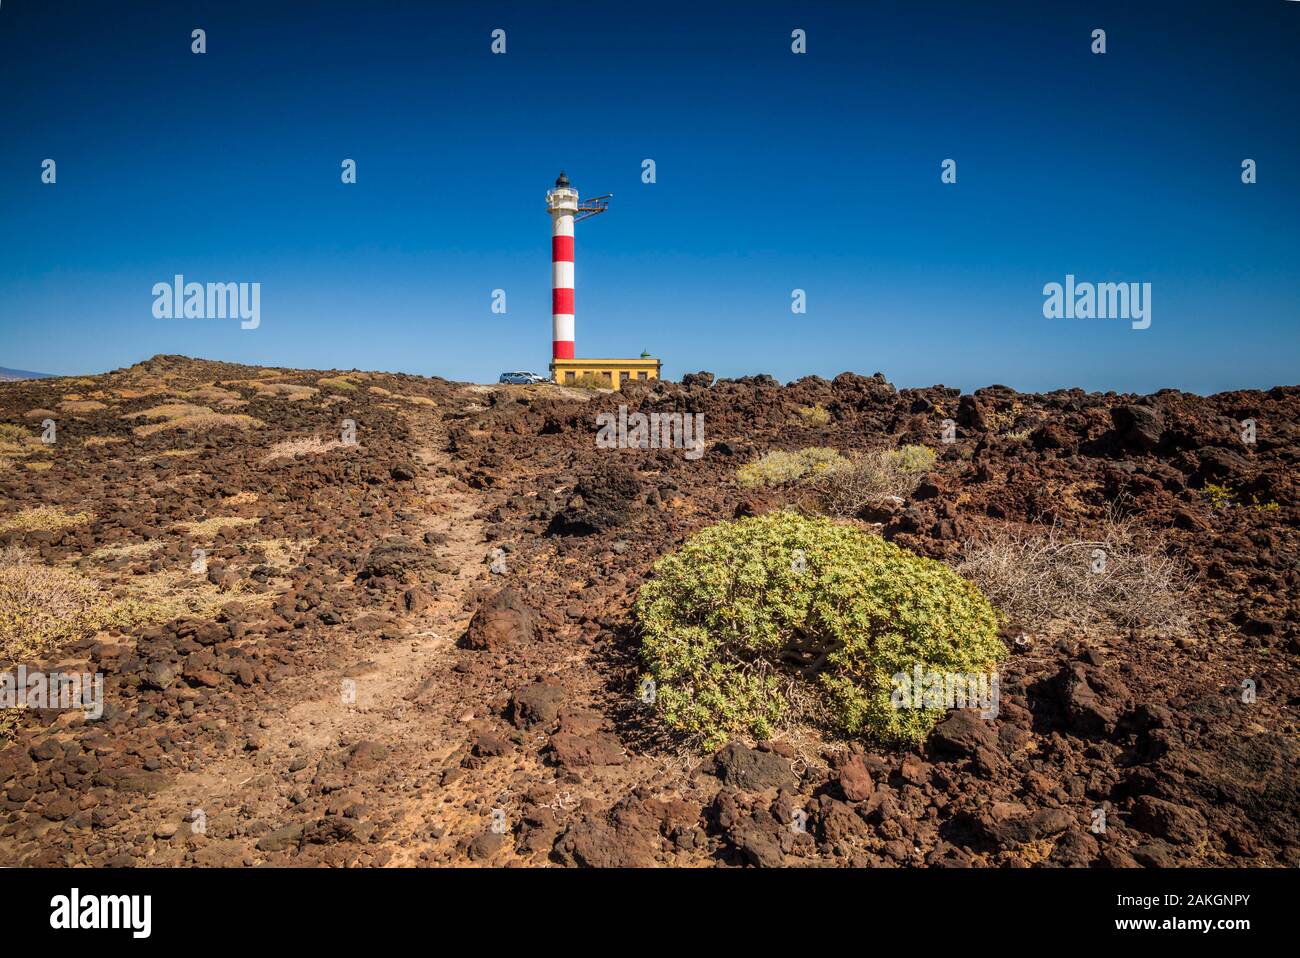 Spain, Canary Islands, Tenerife Island, Poris de Abona, Faro de Punta de Abona lighthouse Stock Photo